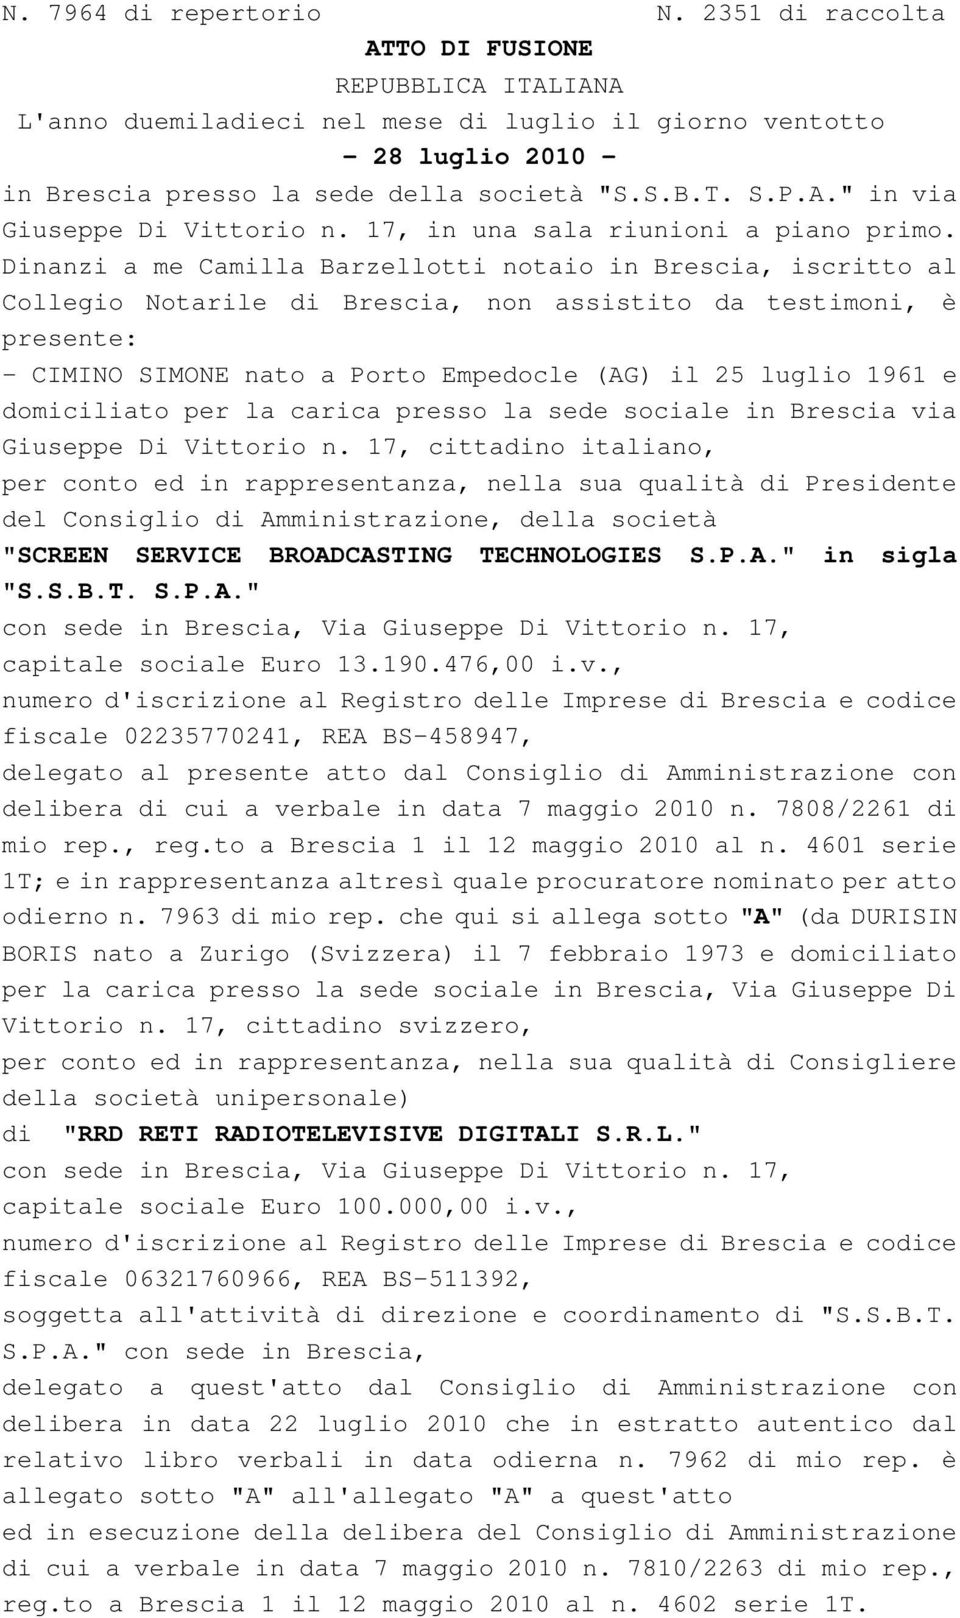 Dinanzi a me Camilla Barzellotti notaio in Brescia, iscritto al Collegio Notarile di Brescia, non assistito da testimoni, è presente: - CIMINO SIMONE nato a Porto Empedocle (AG) il 25 luglio 1961 e